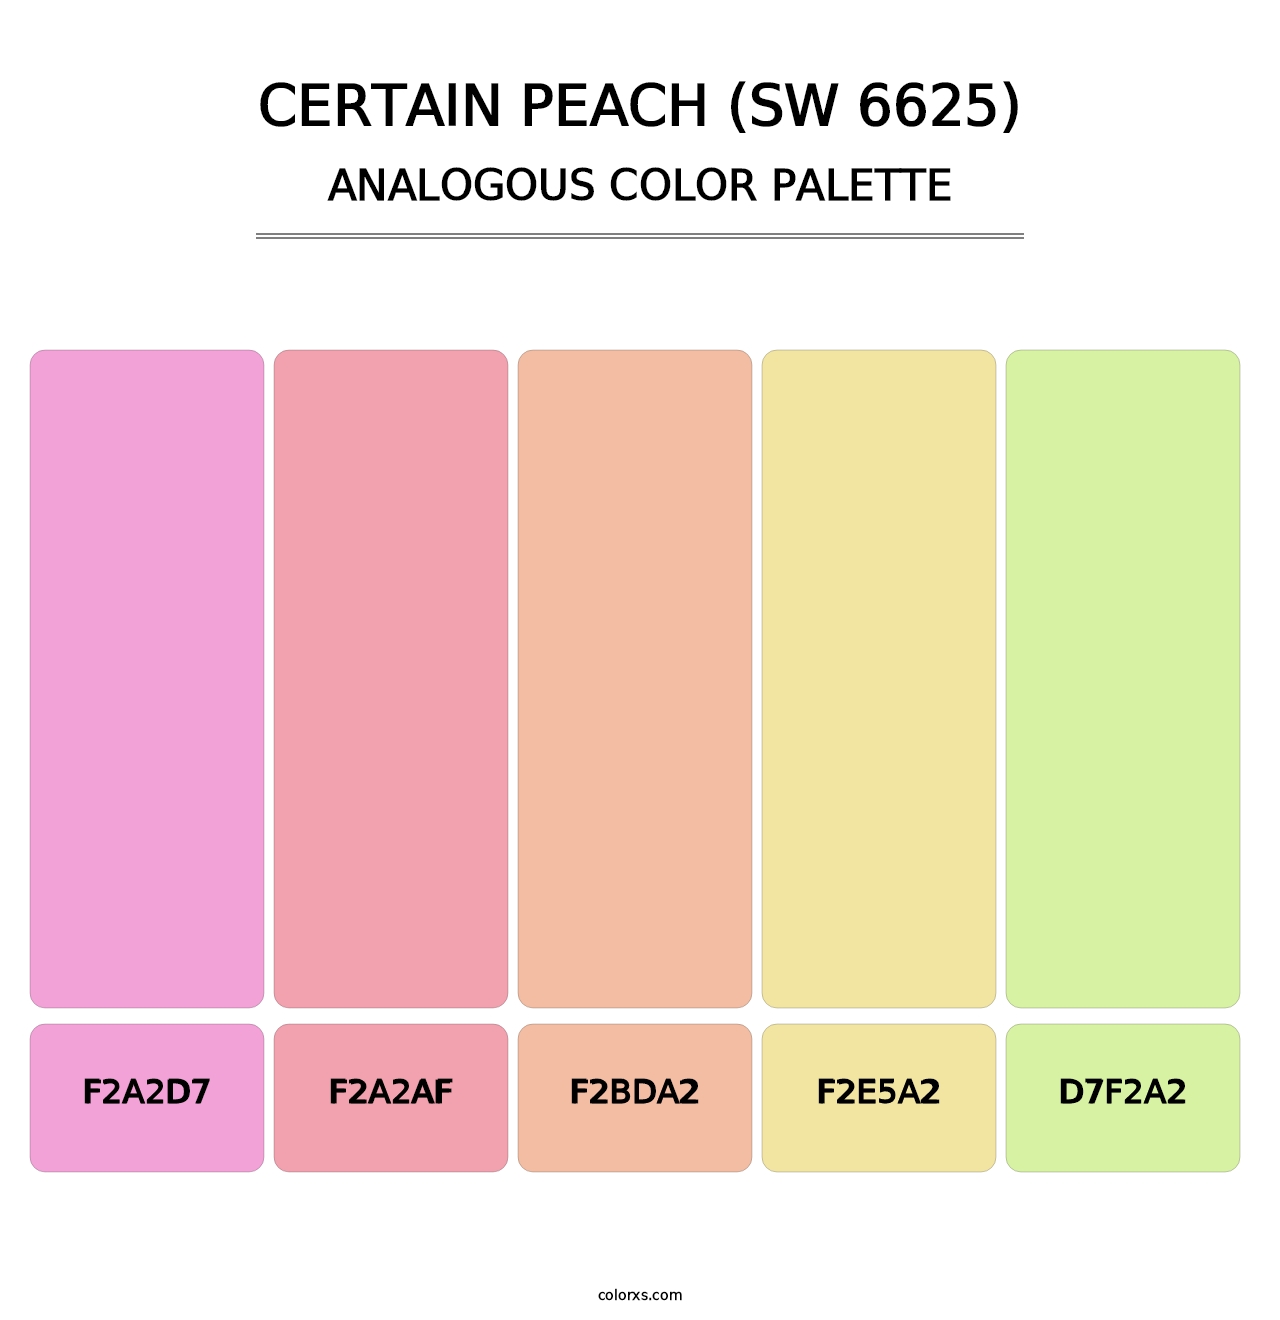 Certain Peach (SW 6625) - Analogous Color Palette